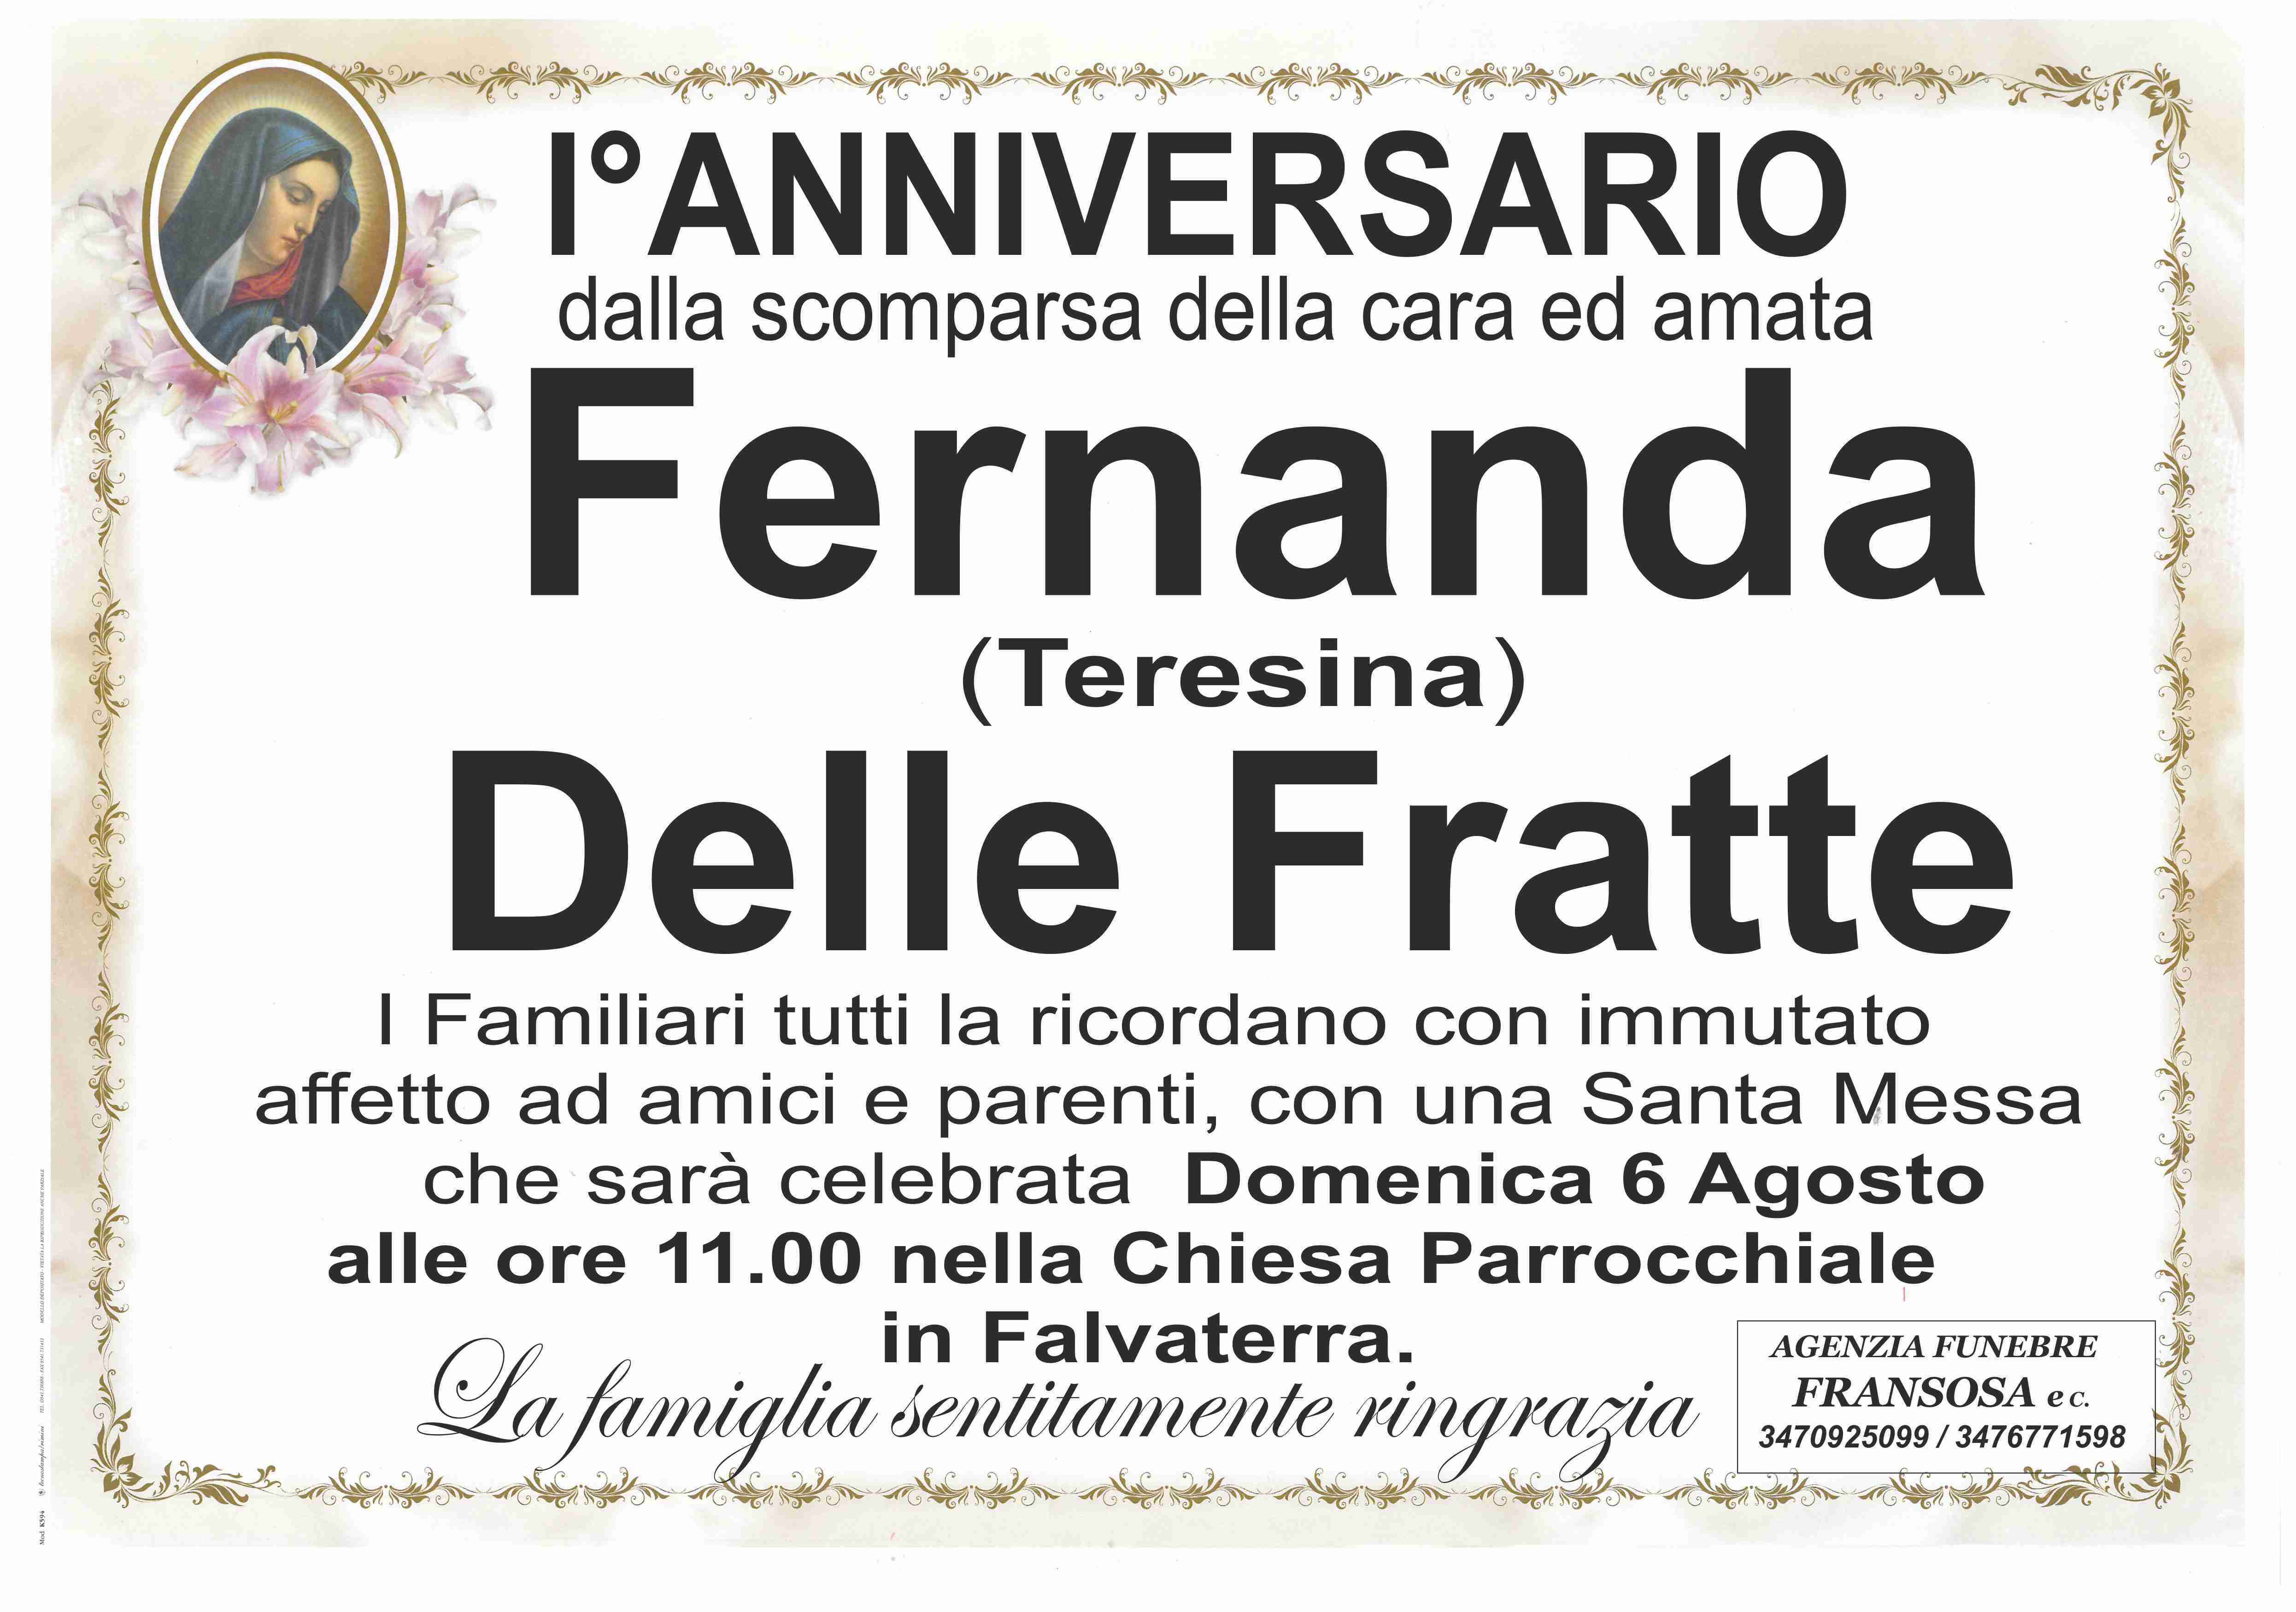 Fernanda Delle Fratte